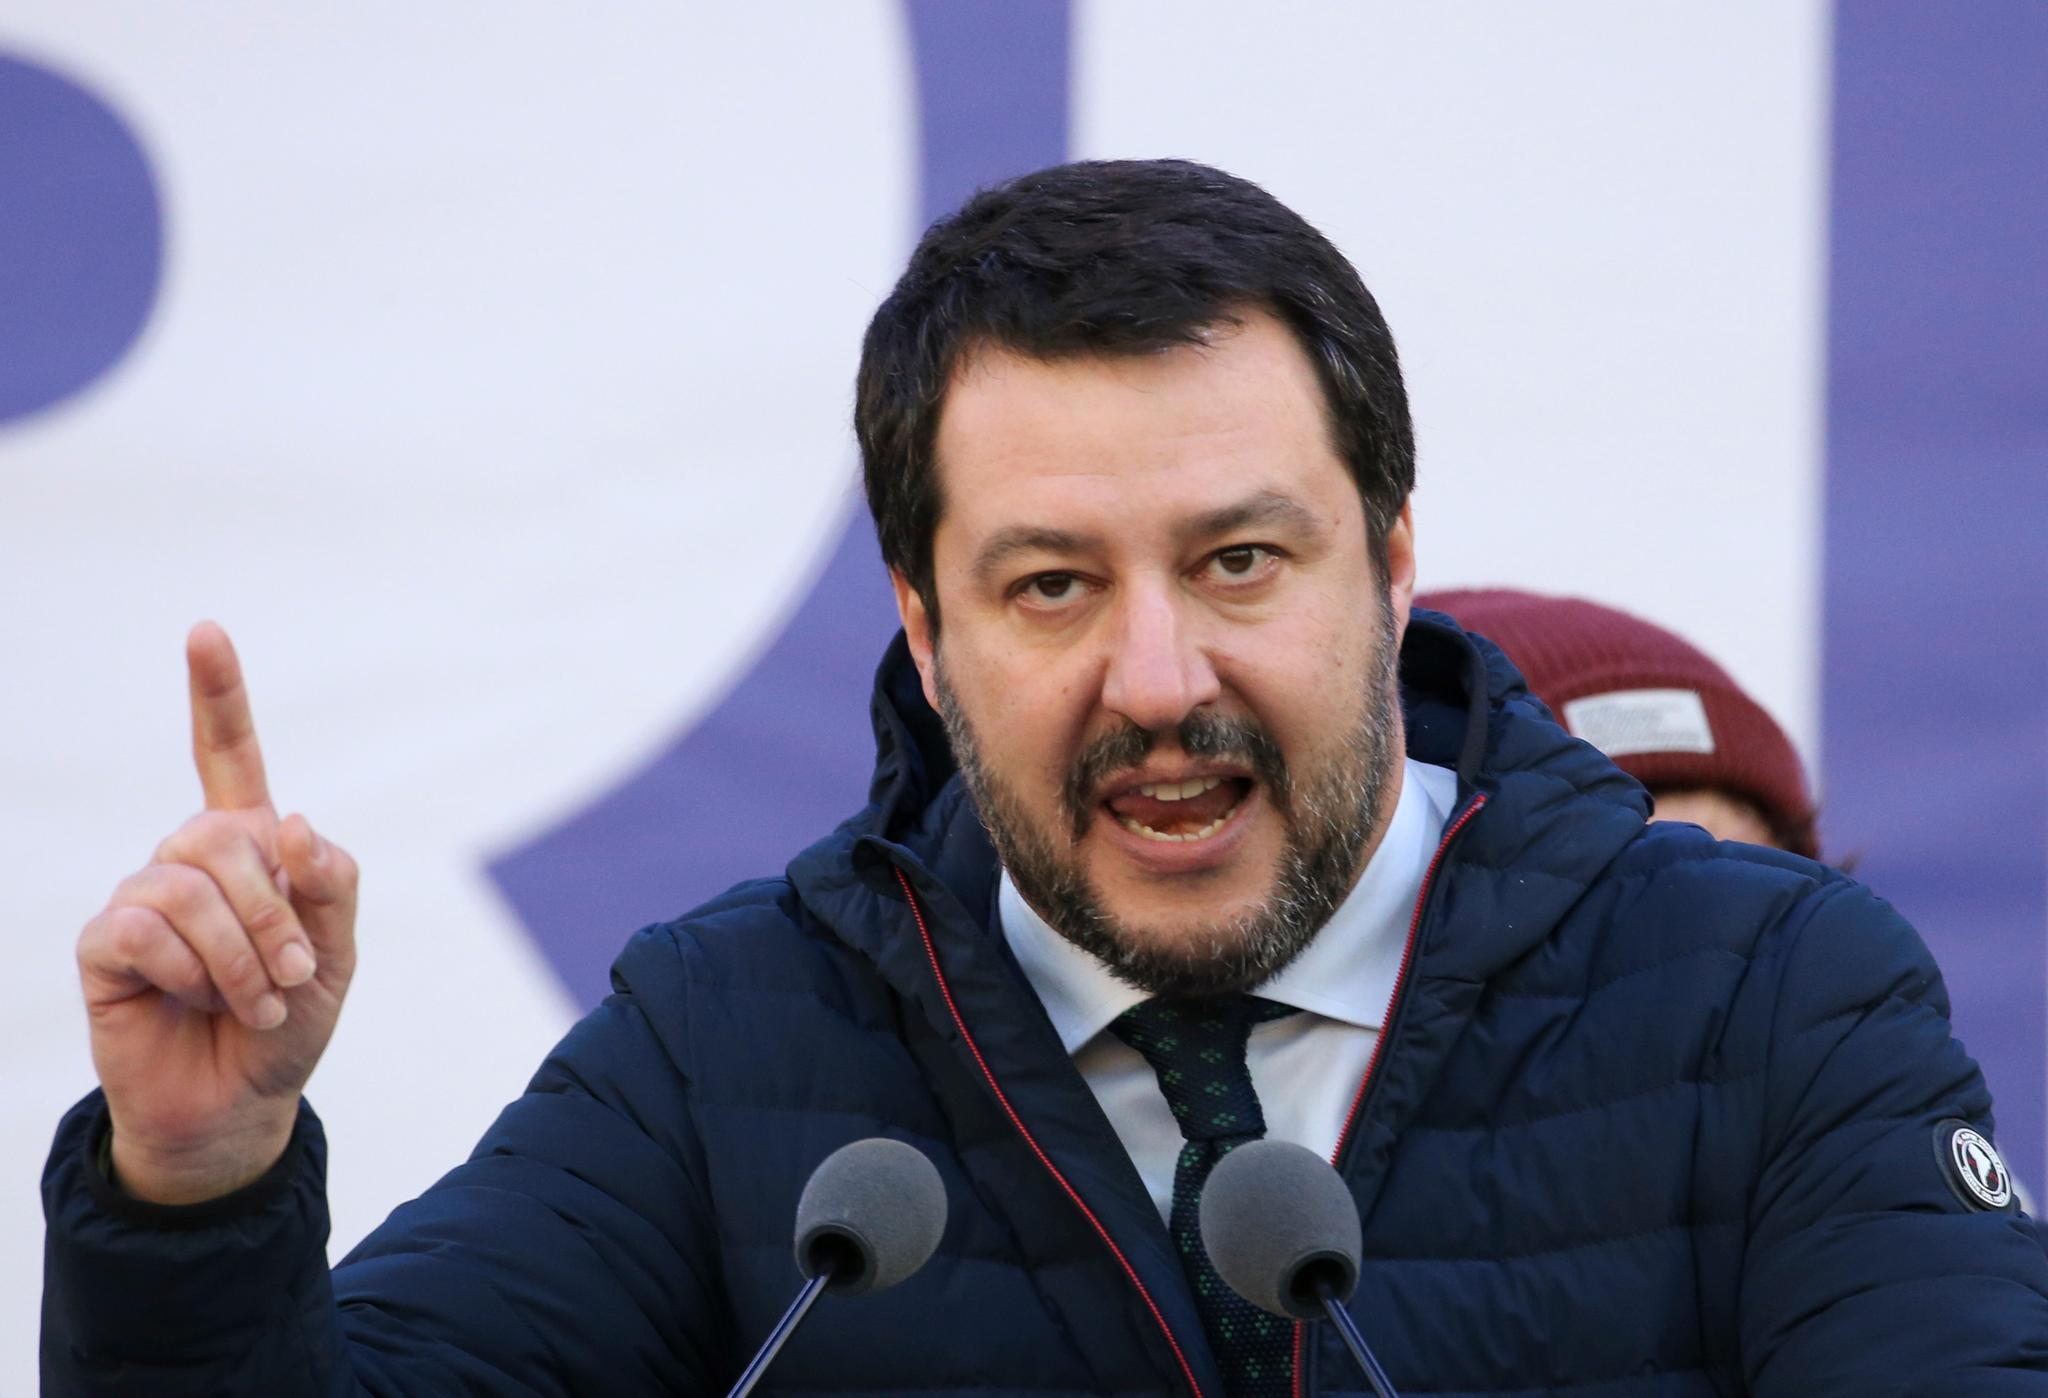 Mange hundre tusen migranter har kommet over Middelhavet til Italia de siste årene. Misnøyen med situasjonen har vært et sentralt tema i valgkampen til ytre høyre-partiet Lega og lederen Matteo Salvini, som ligger an til et rekordresultat i dag.